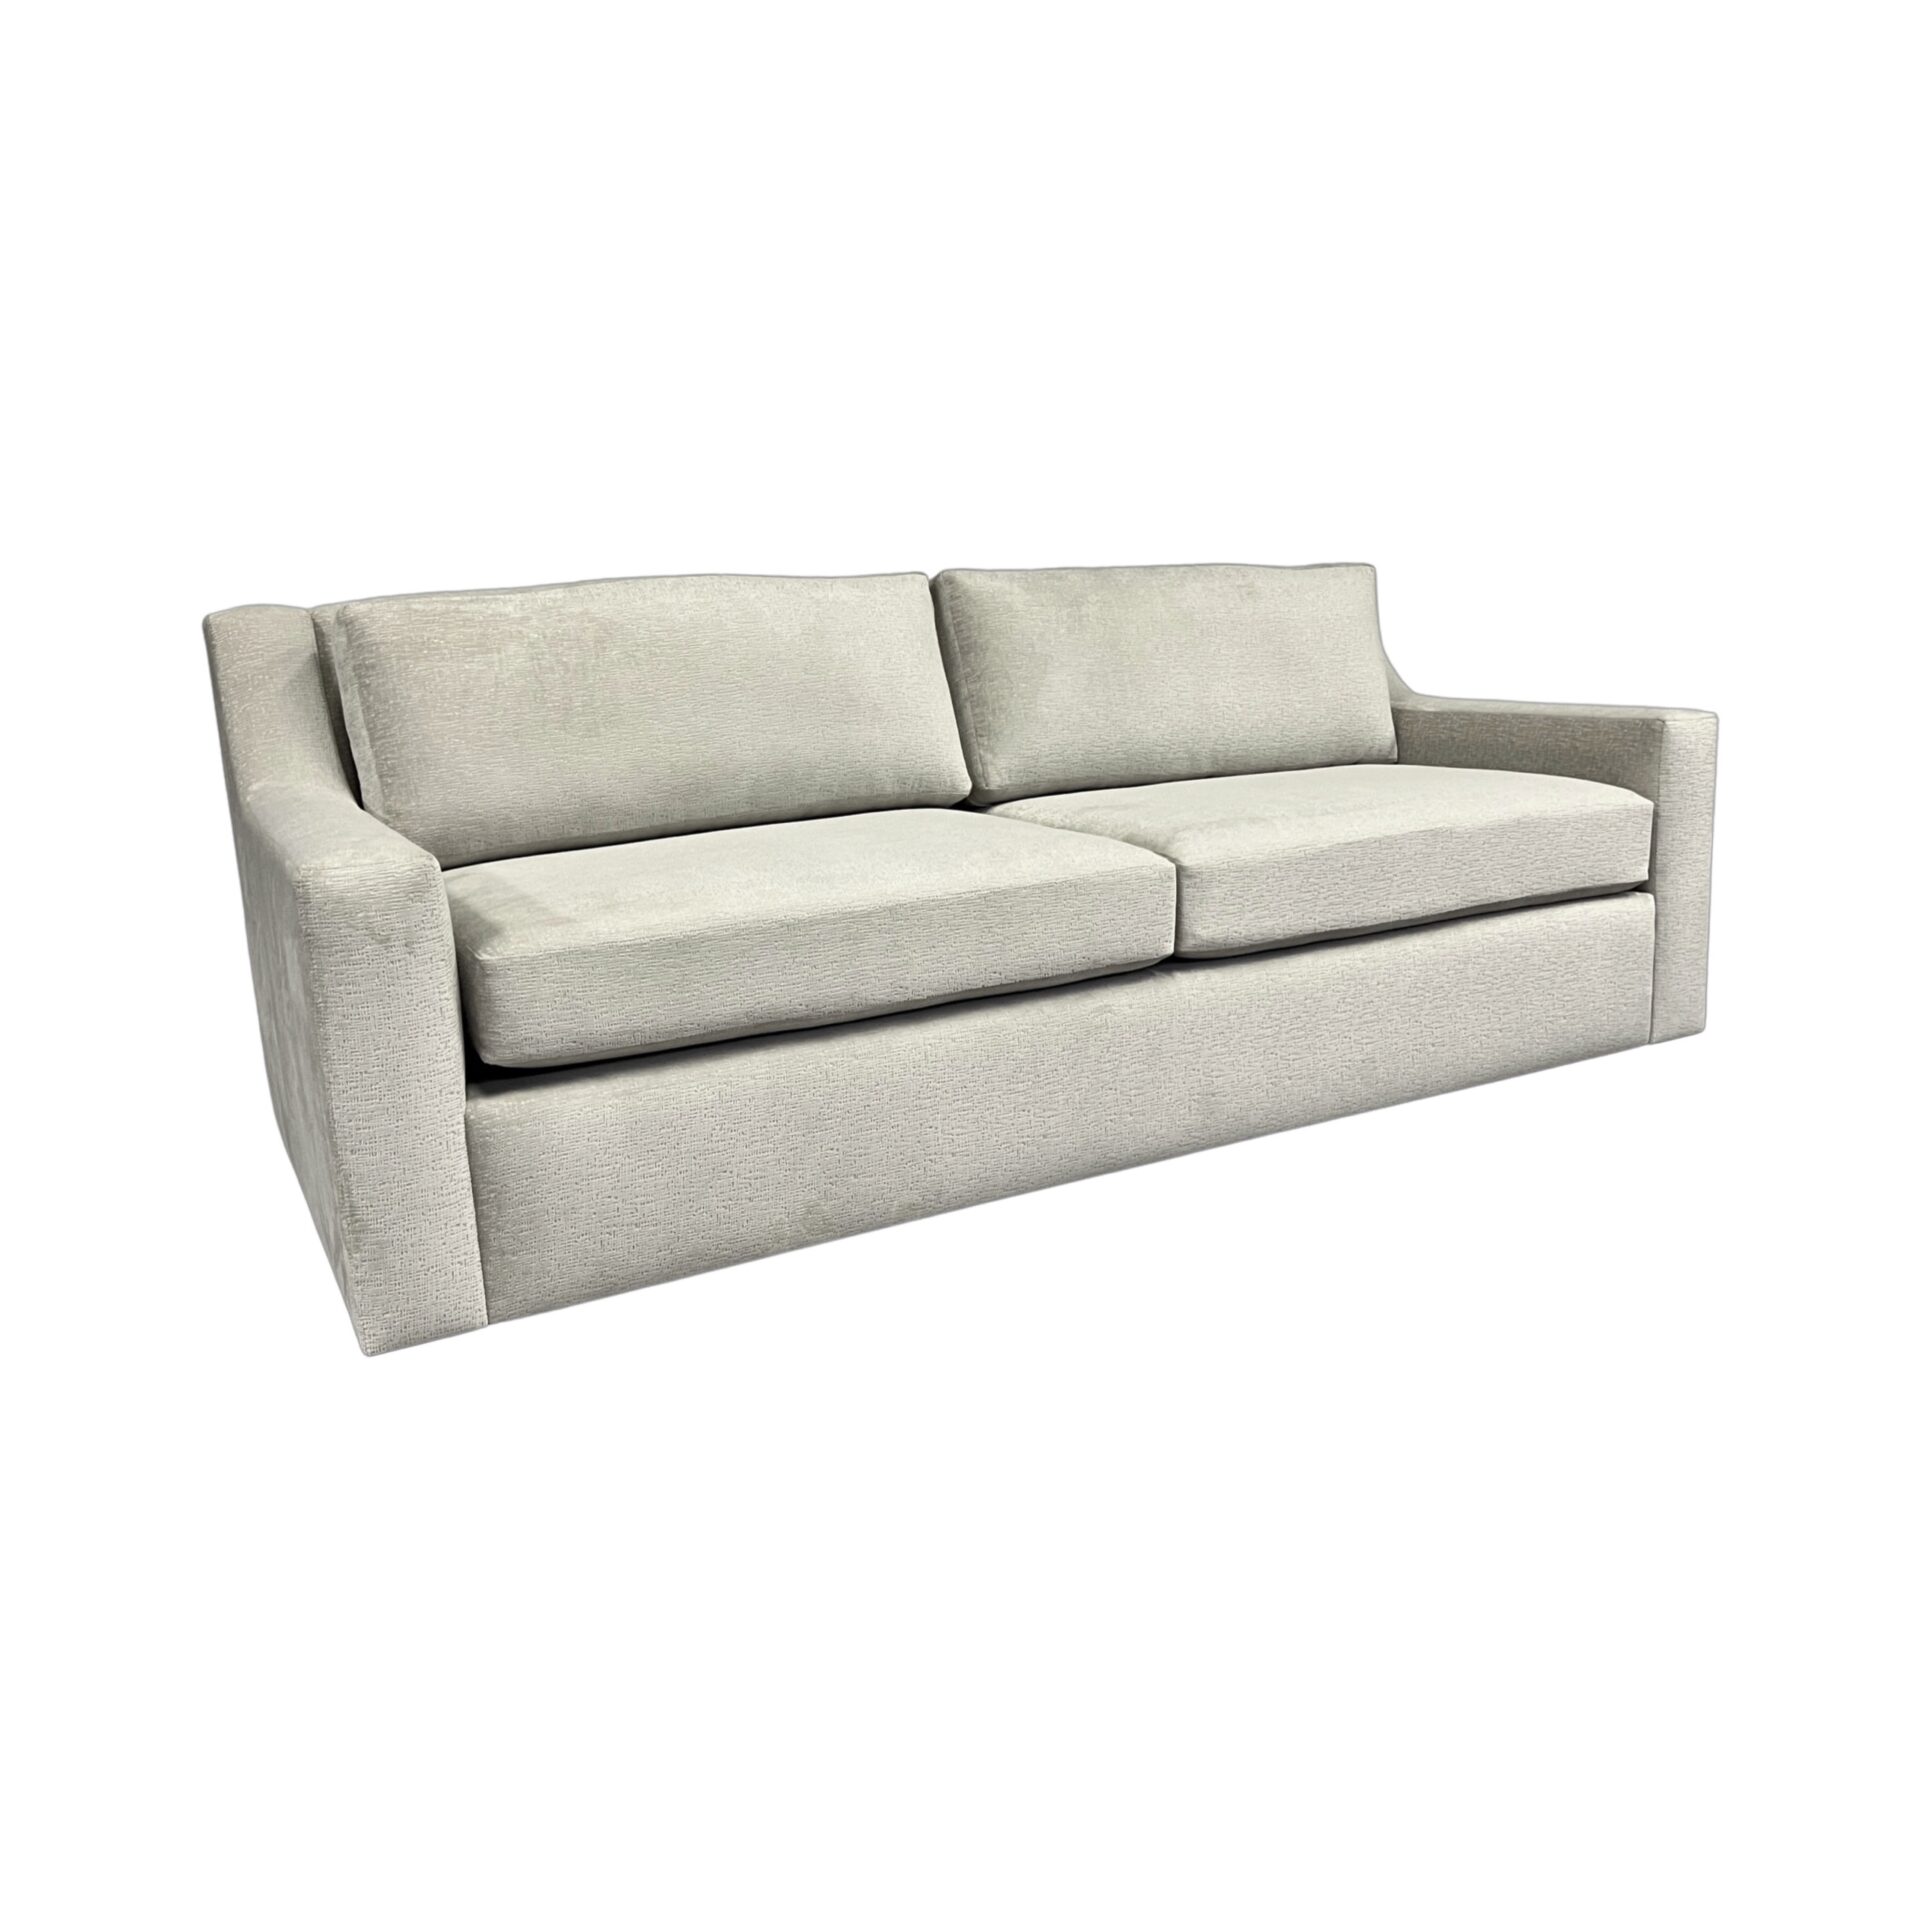 FALLYN-upholstered-sofa-luxury-furniture-blend-home-furnishings